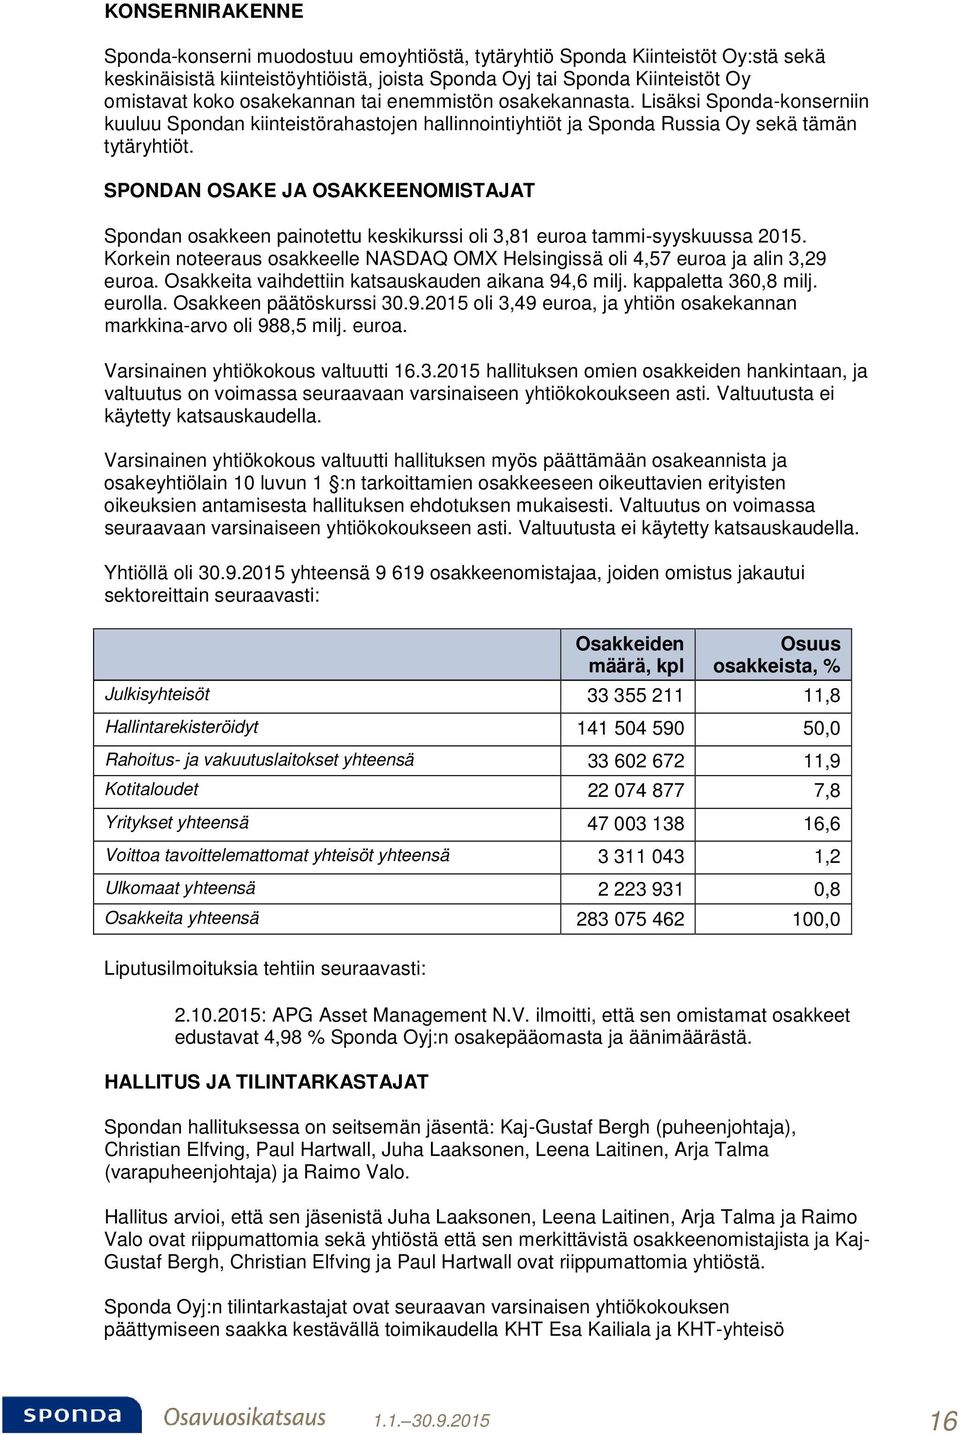 SPONDAN OSAKE JA OSAKKEENOMISTAJAT Spondan osakkeen painotettu keskikurssi oli 3,81 euroa tammi-syyskuussa 2015. Korkein noteeraus osakkeelle NASDAQ OMX Helsingissä oli 4,57 euroa ja alin 3,29 euroa.